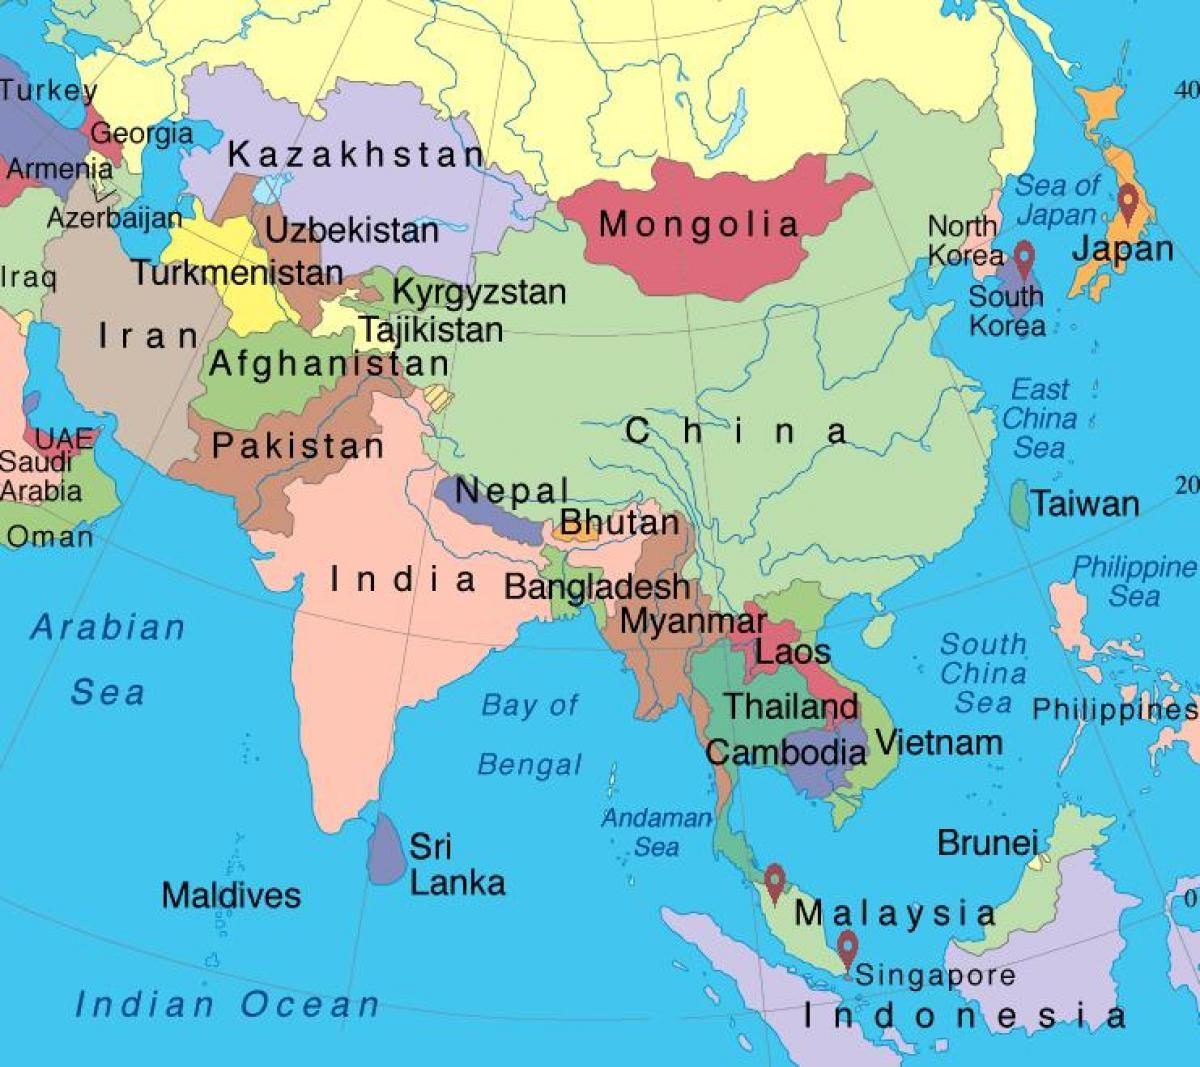 karta svijeta singapur Rusija i Kina sve više jačaju ekonomski i vojni utjecaj u Aziji i  karta svijeta singapur